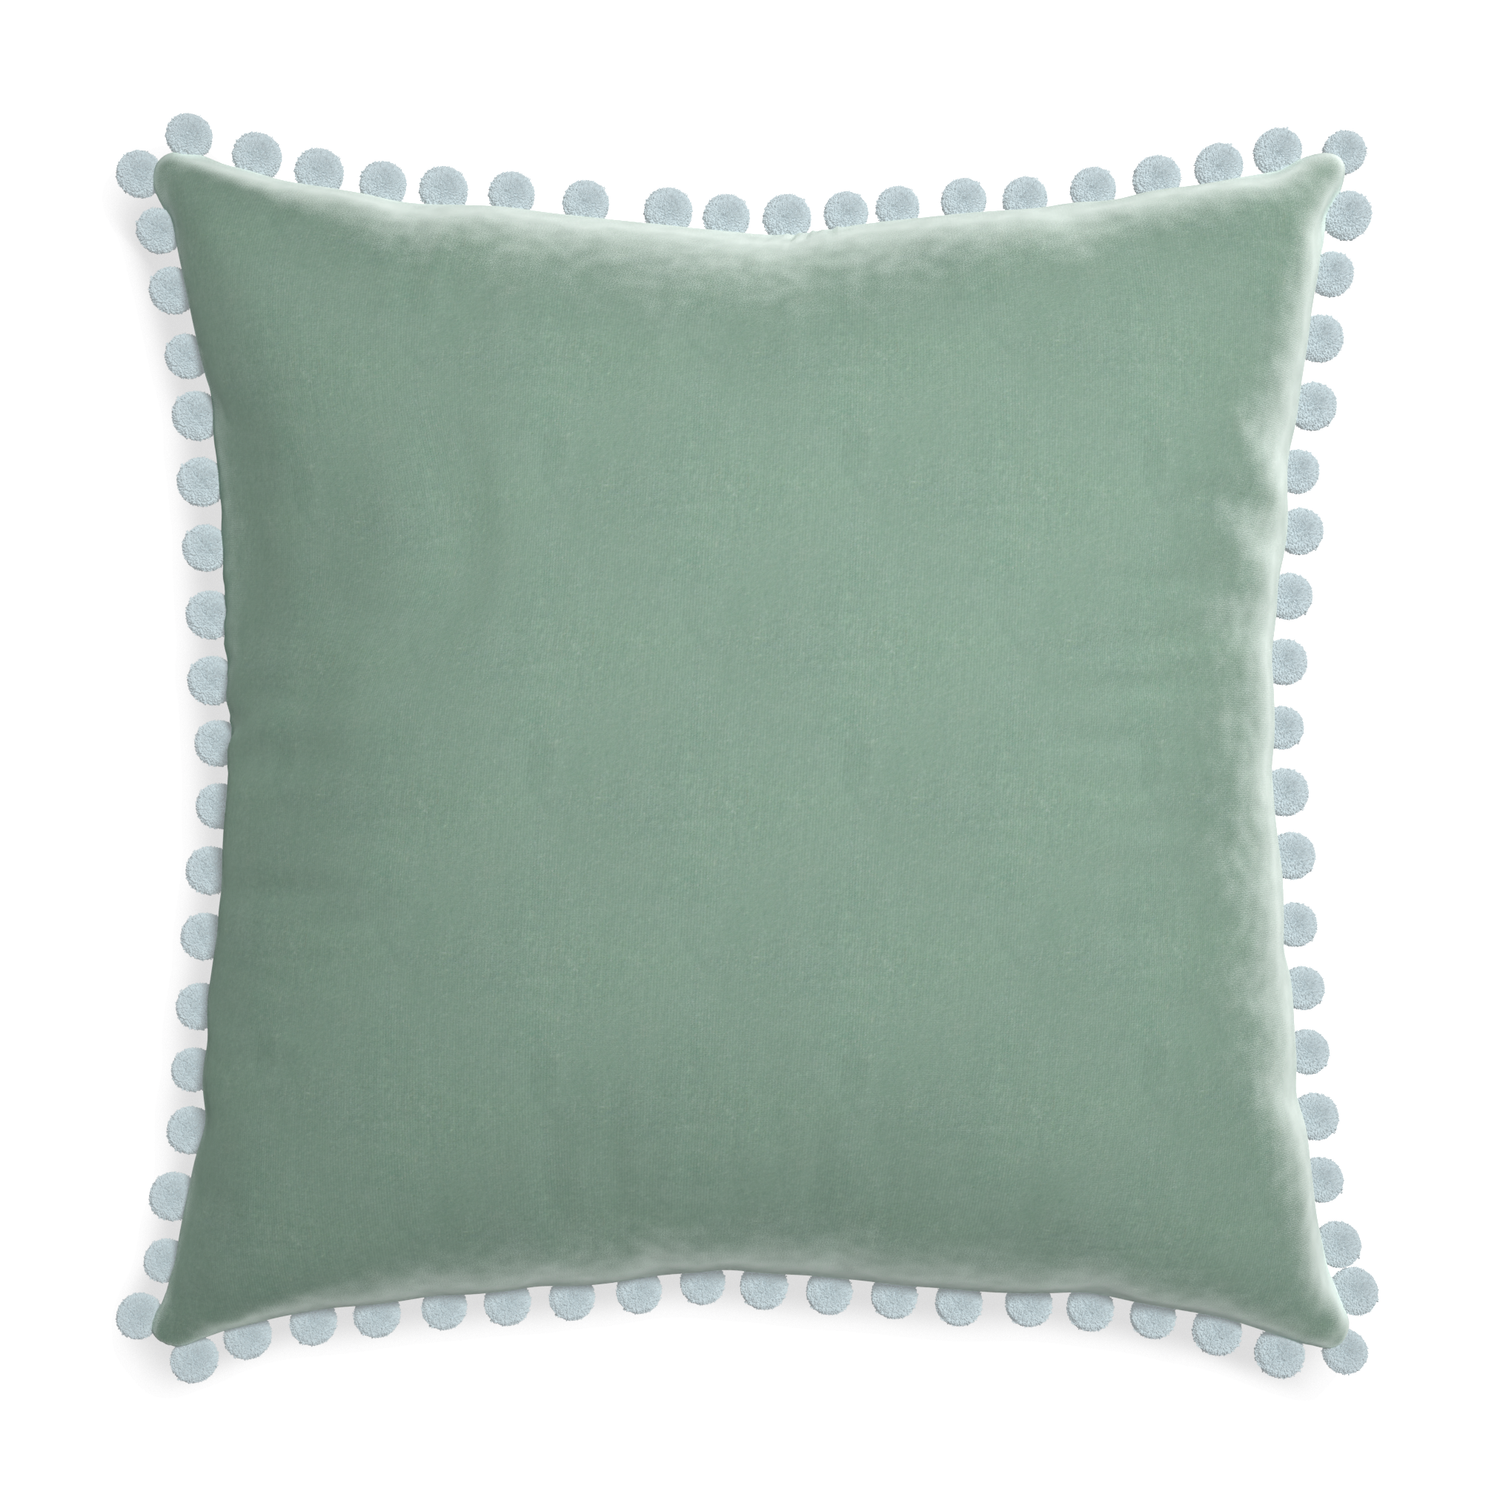 square blue green velvet pillow with light blue pom poms